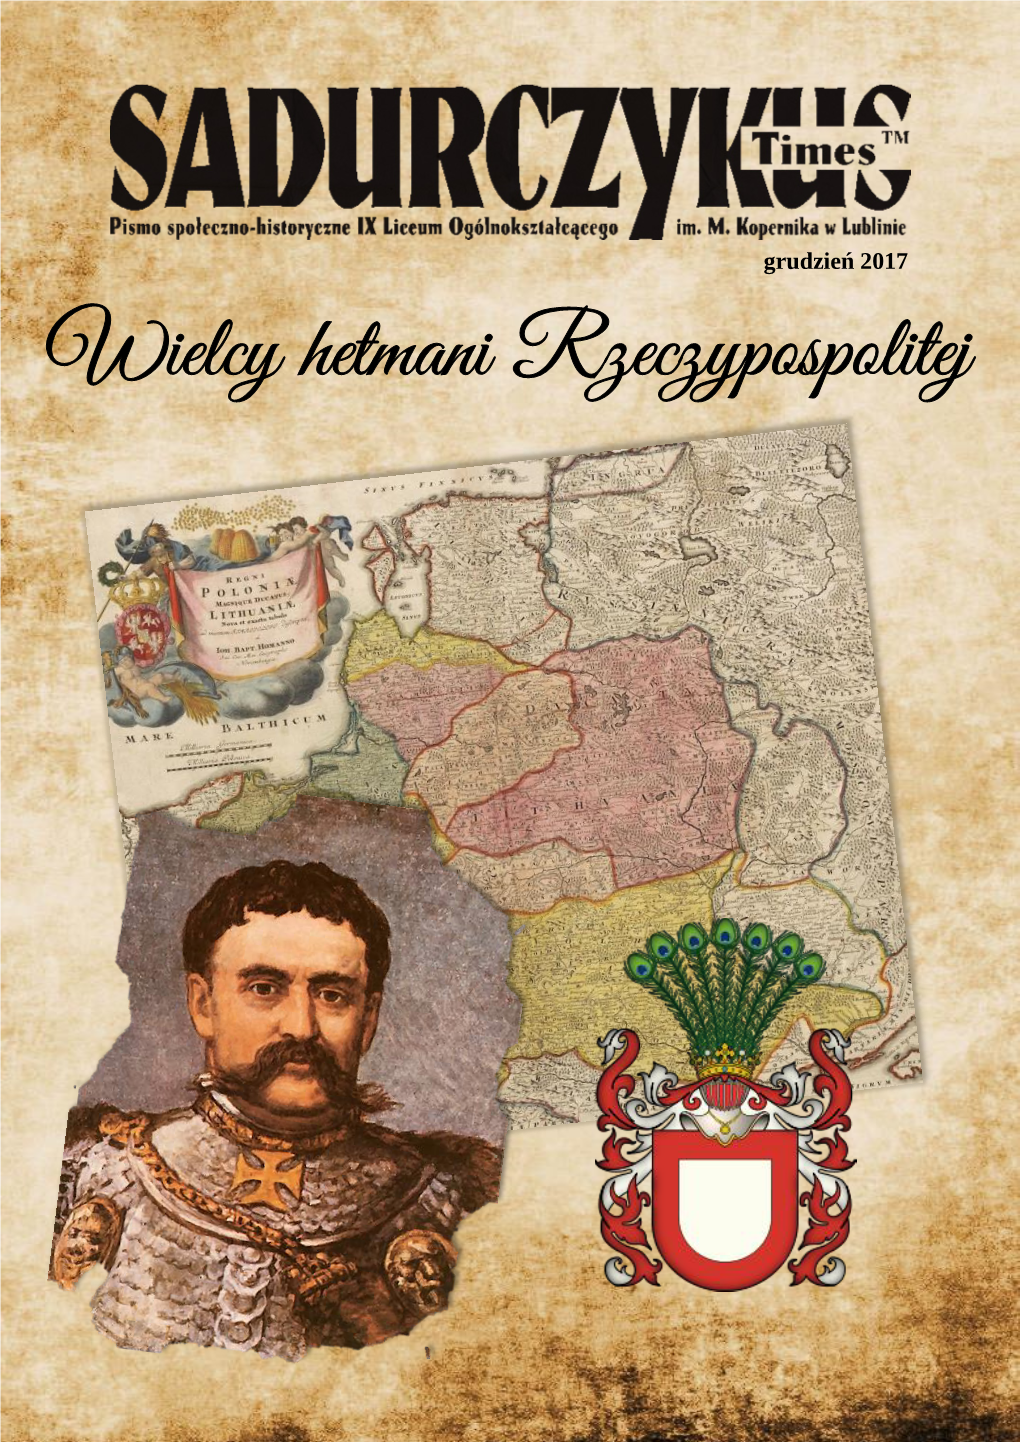 Wielcy Hetmani Rzeczypospolitej